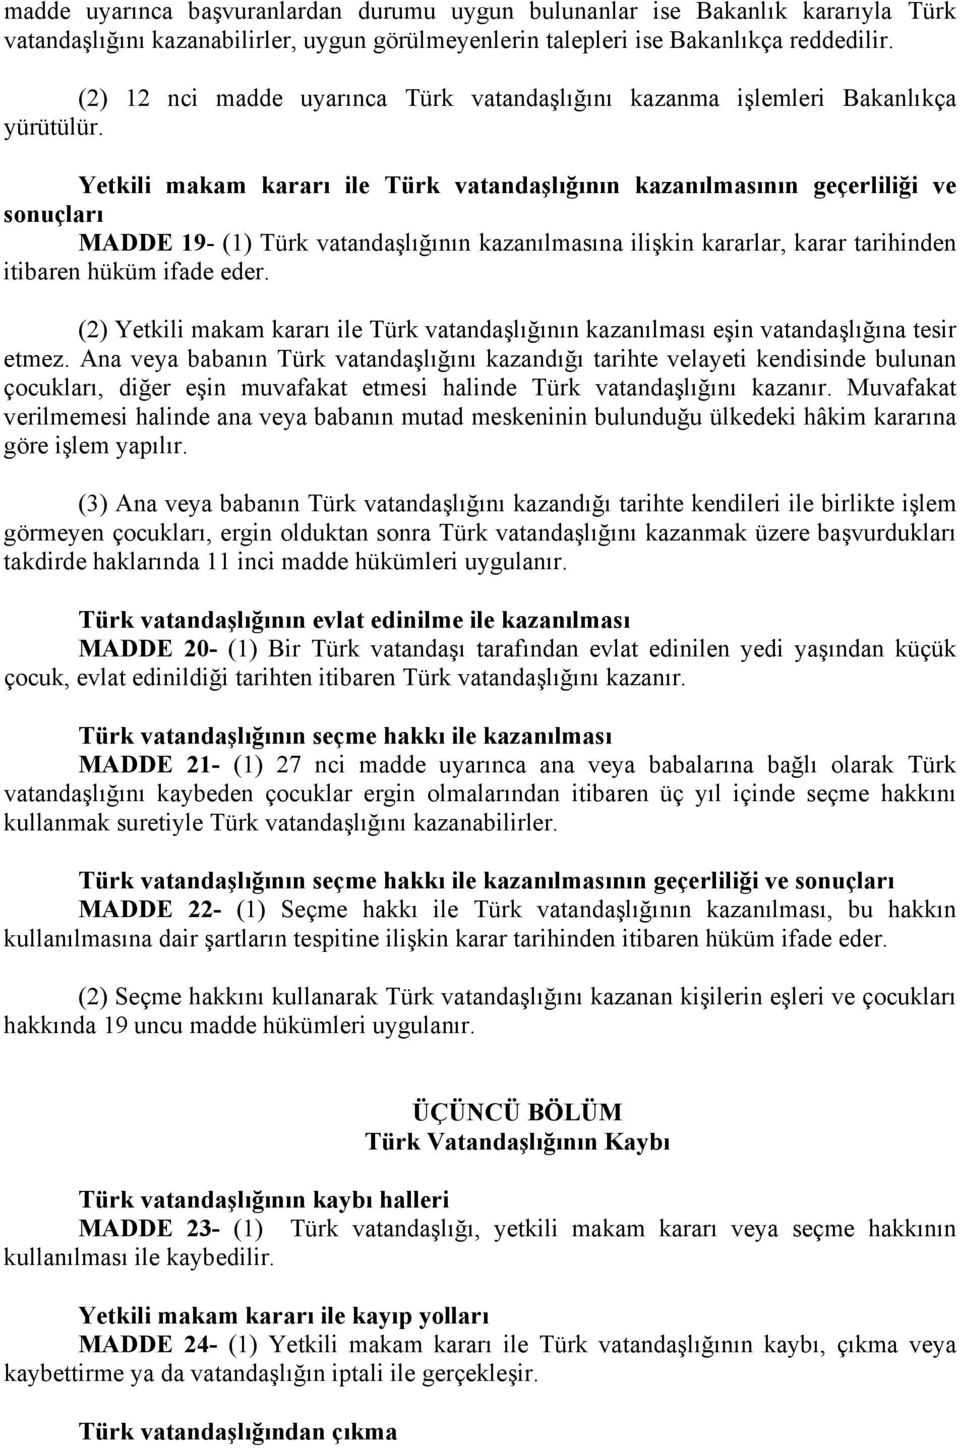 Yetkili makam kararı ile Türk vatandaşlığının kazanılmasının geçerliliği ve sonuçları MADDE 19- (1) Türk vatandaşlığının kazanılmasına ilişkin kararlar, karar tarihinden itibaren hüküm ifade eder.